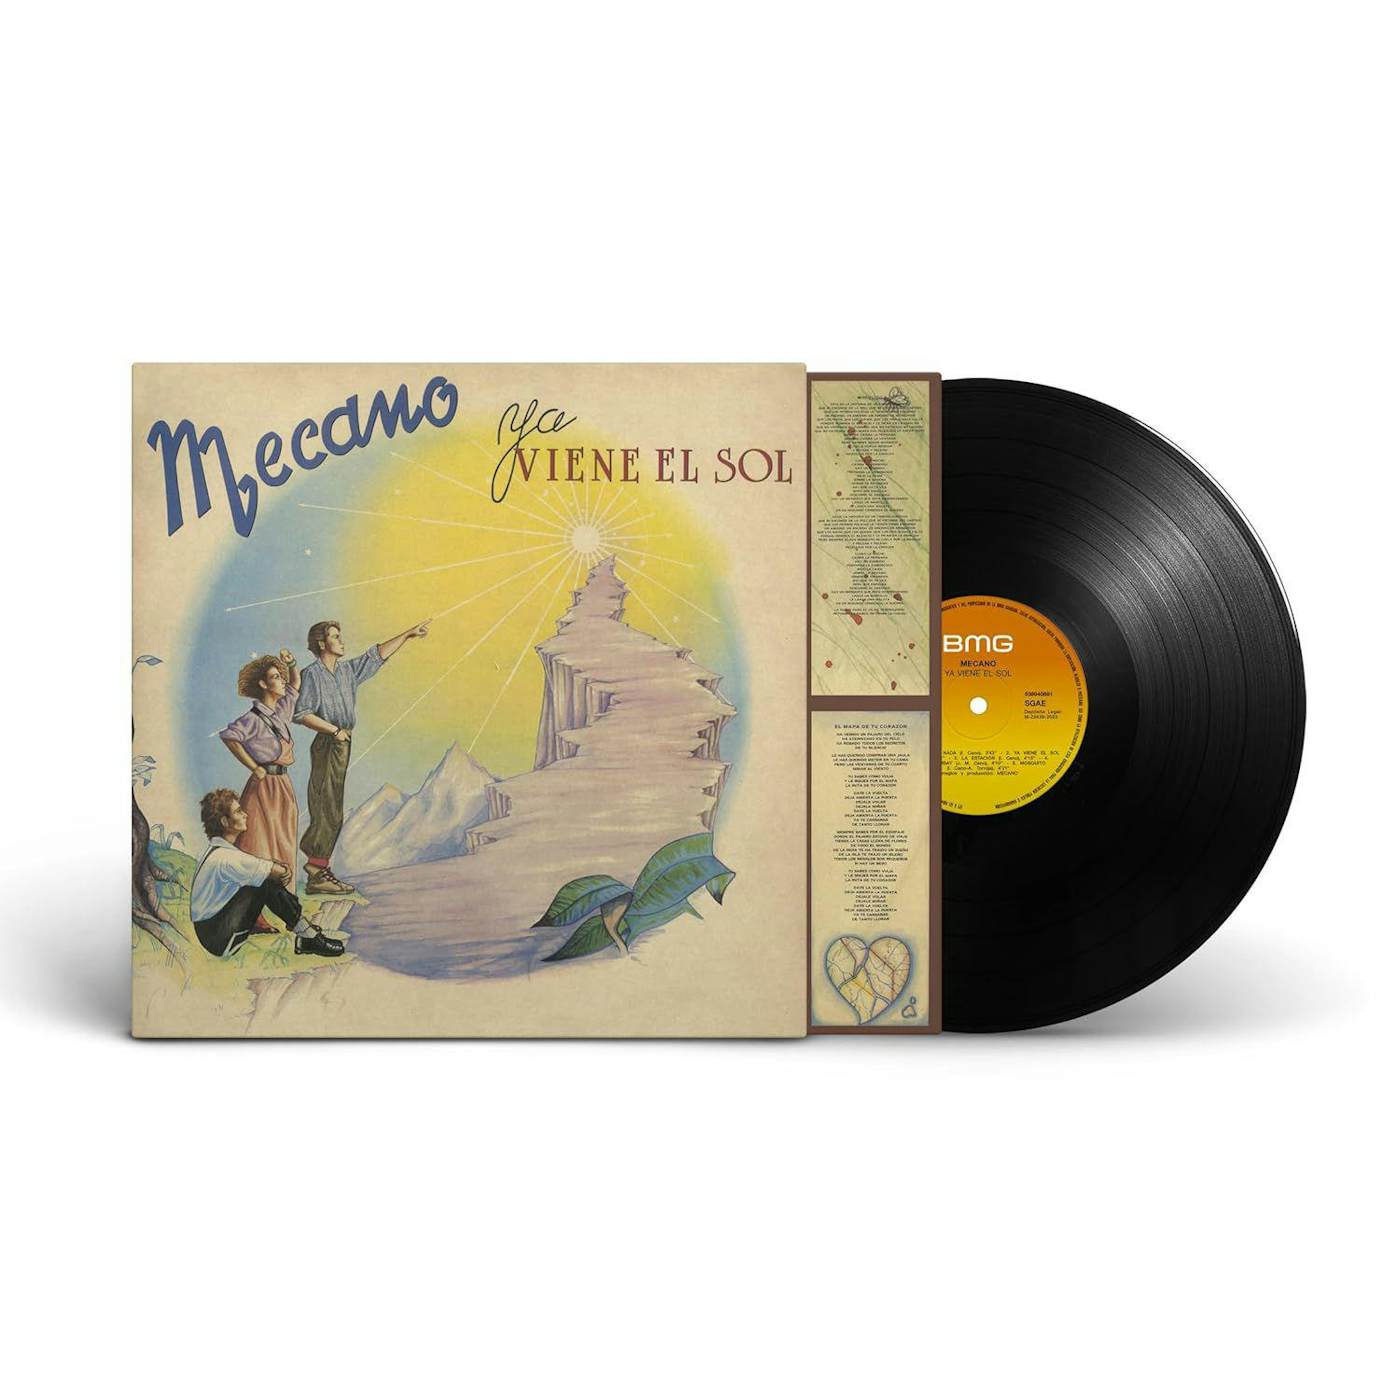 Mecano Ya Comes El Sol 1984 CBS Spain Edition - LP Vinyl 12  VG/VG